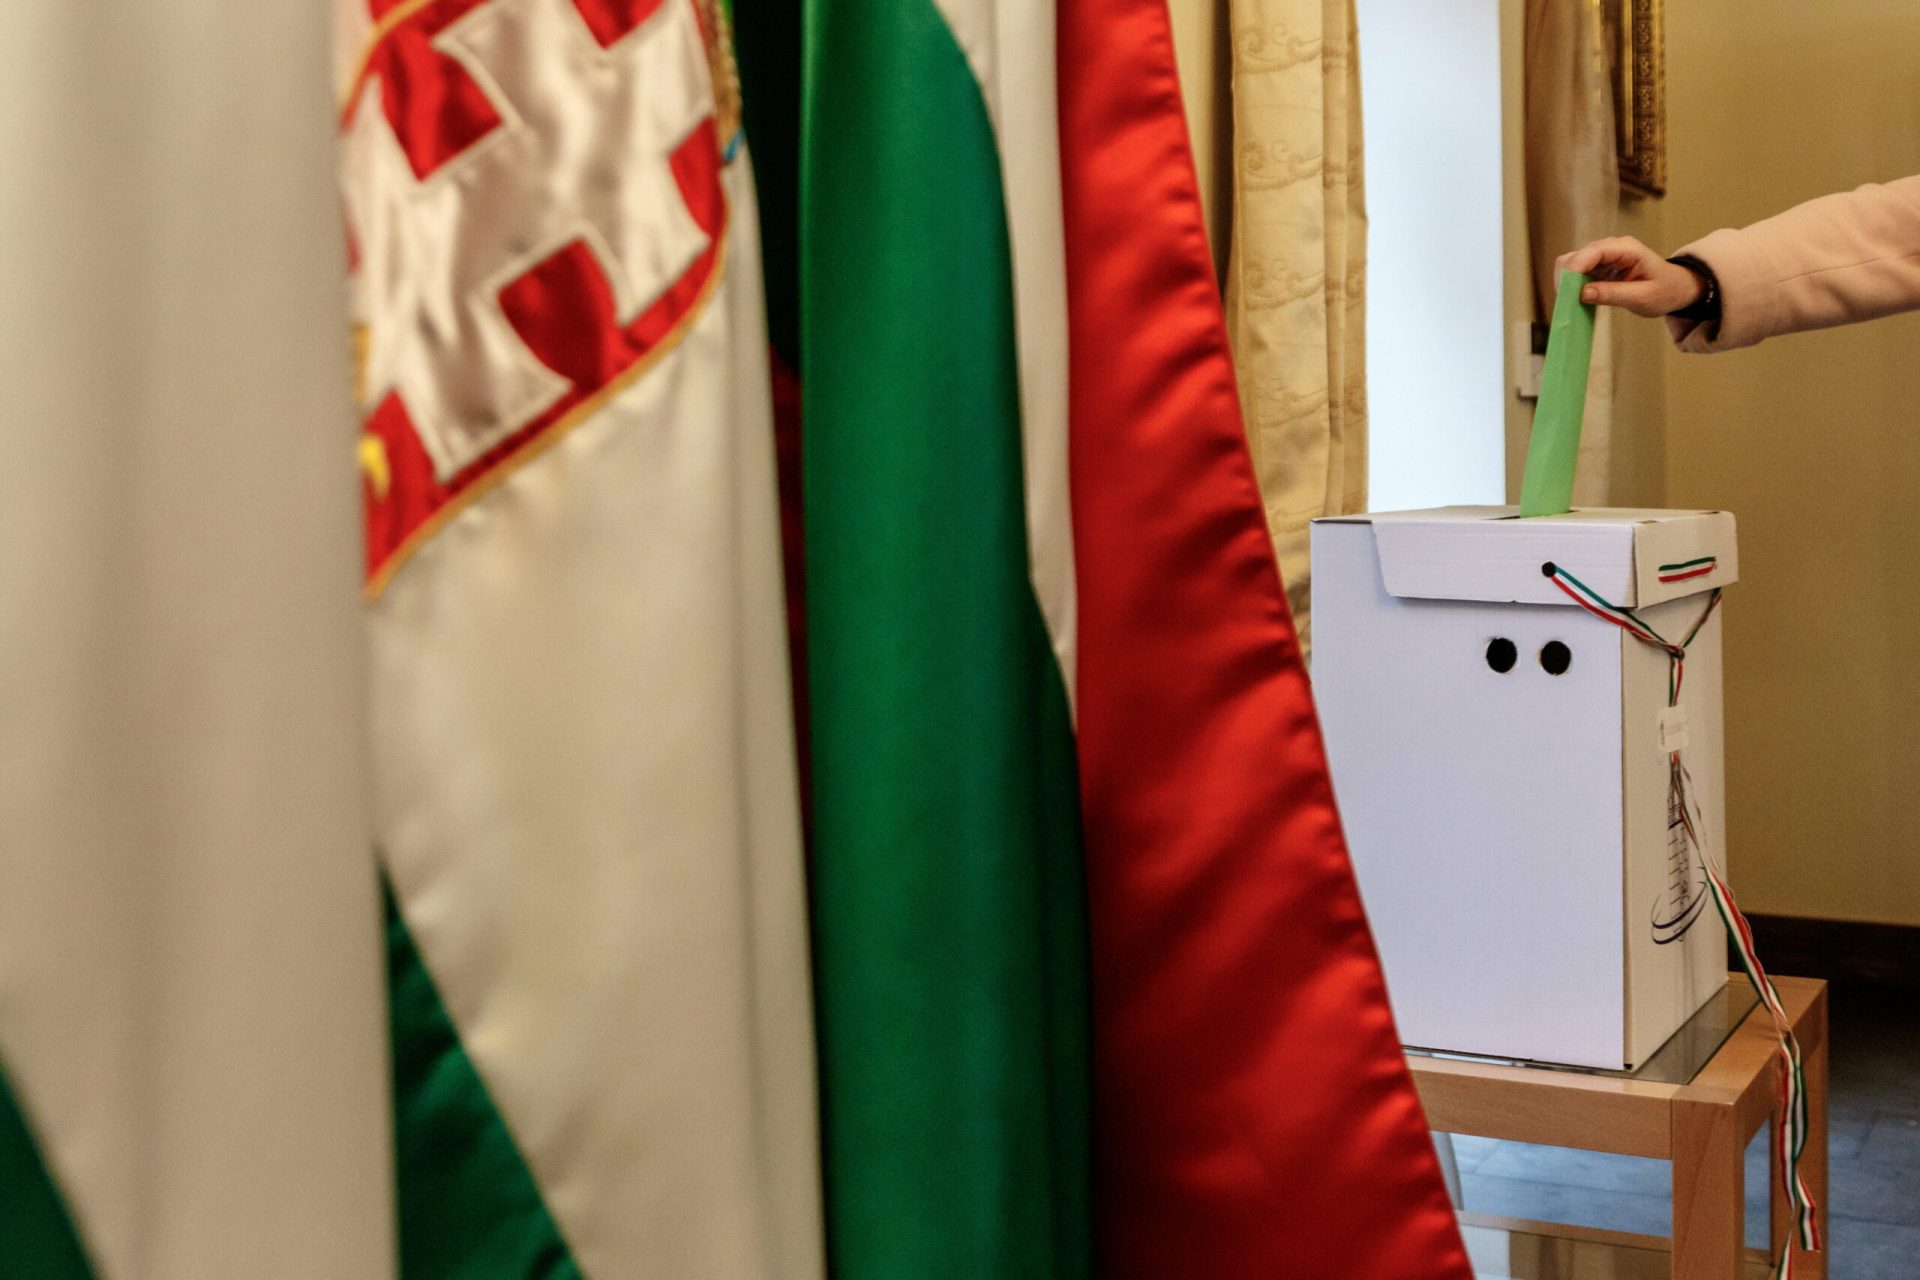 Választási válság Bozsokon: Kiesett az egyetlen jelölt, elmarad a szavazás